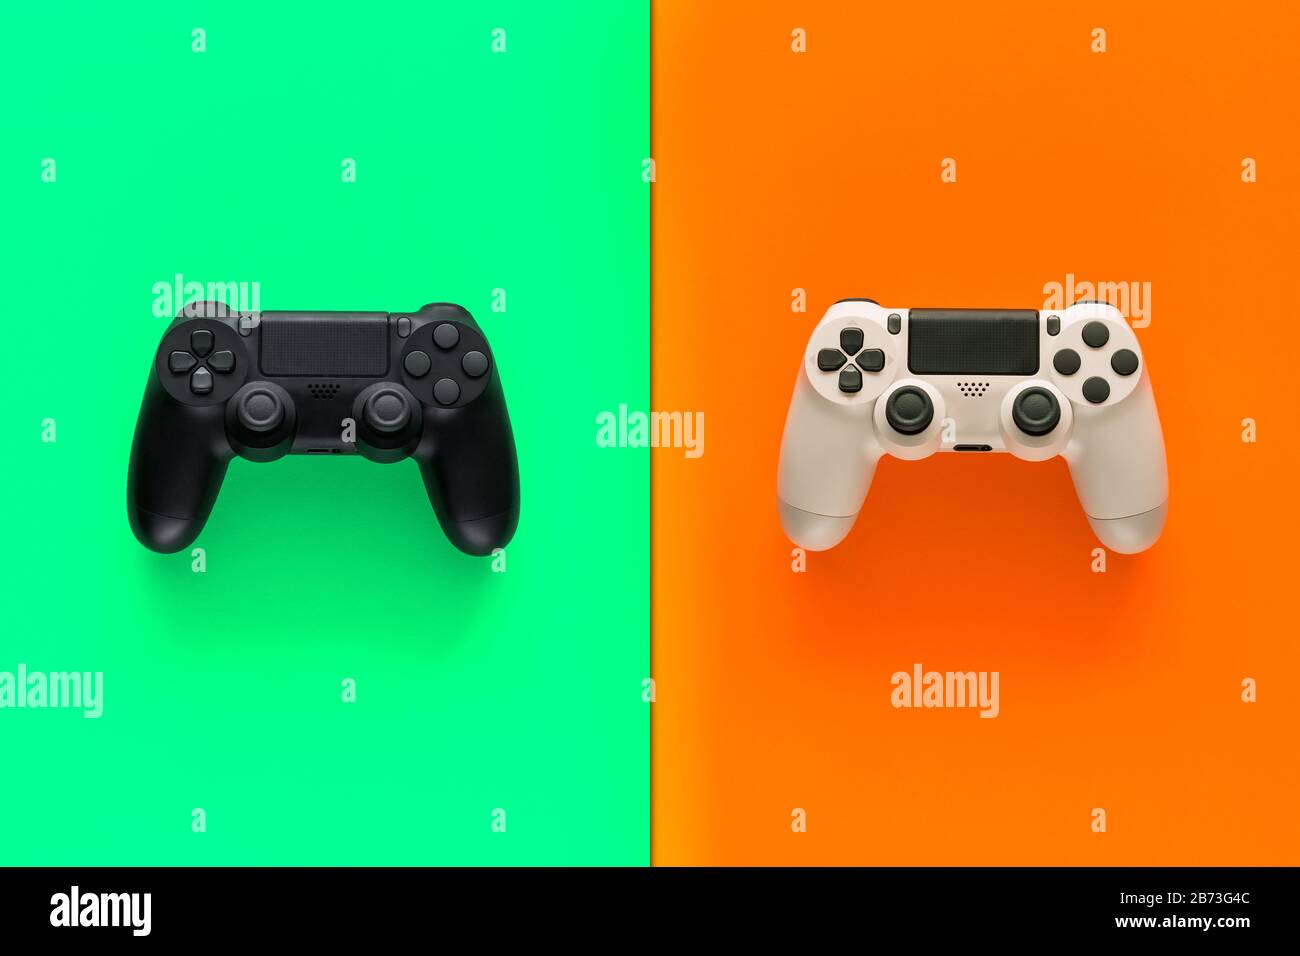 Stock-Foto von zwei Gamepads in der Mitte von zwei farbigen Hintergründen Stockfoto